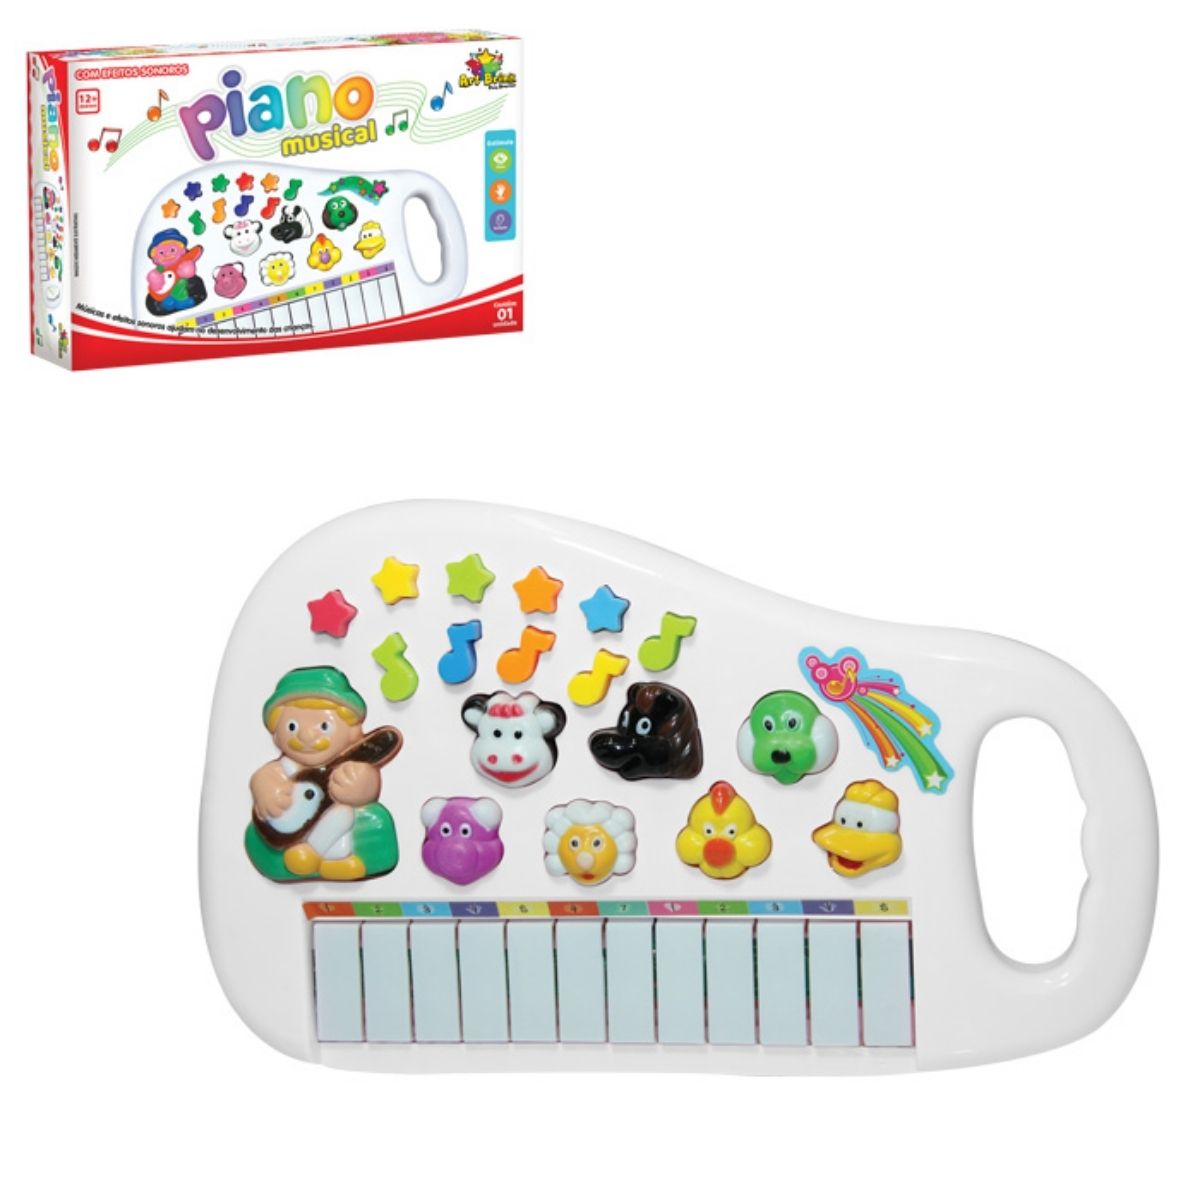 Brinquedo teclado infantil com som dos animais e música